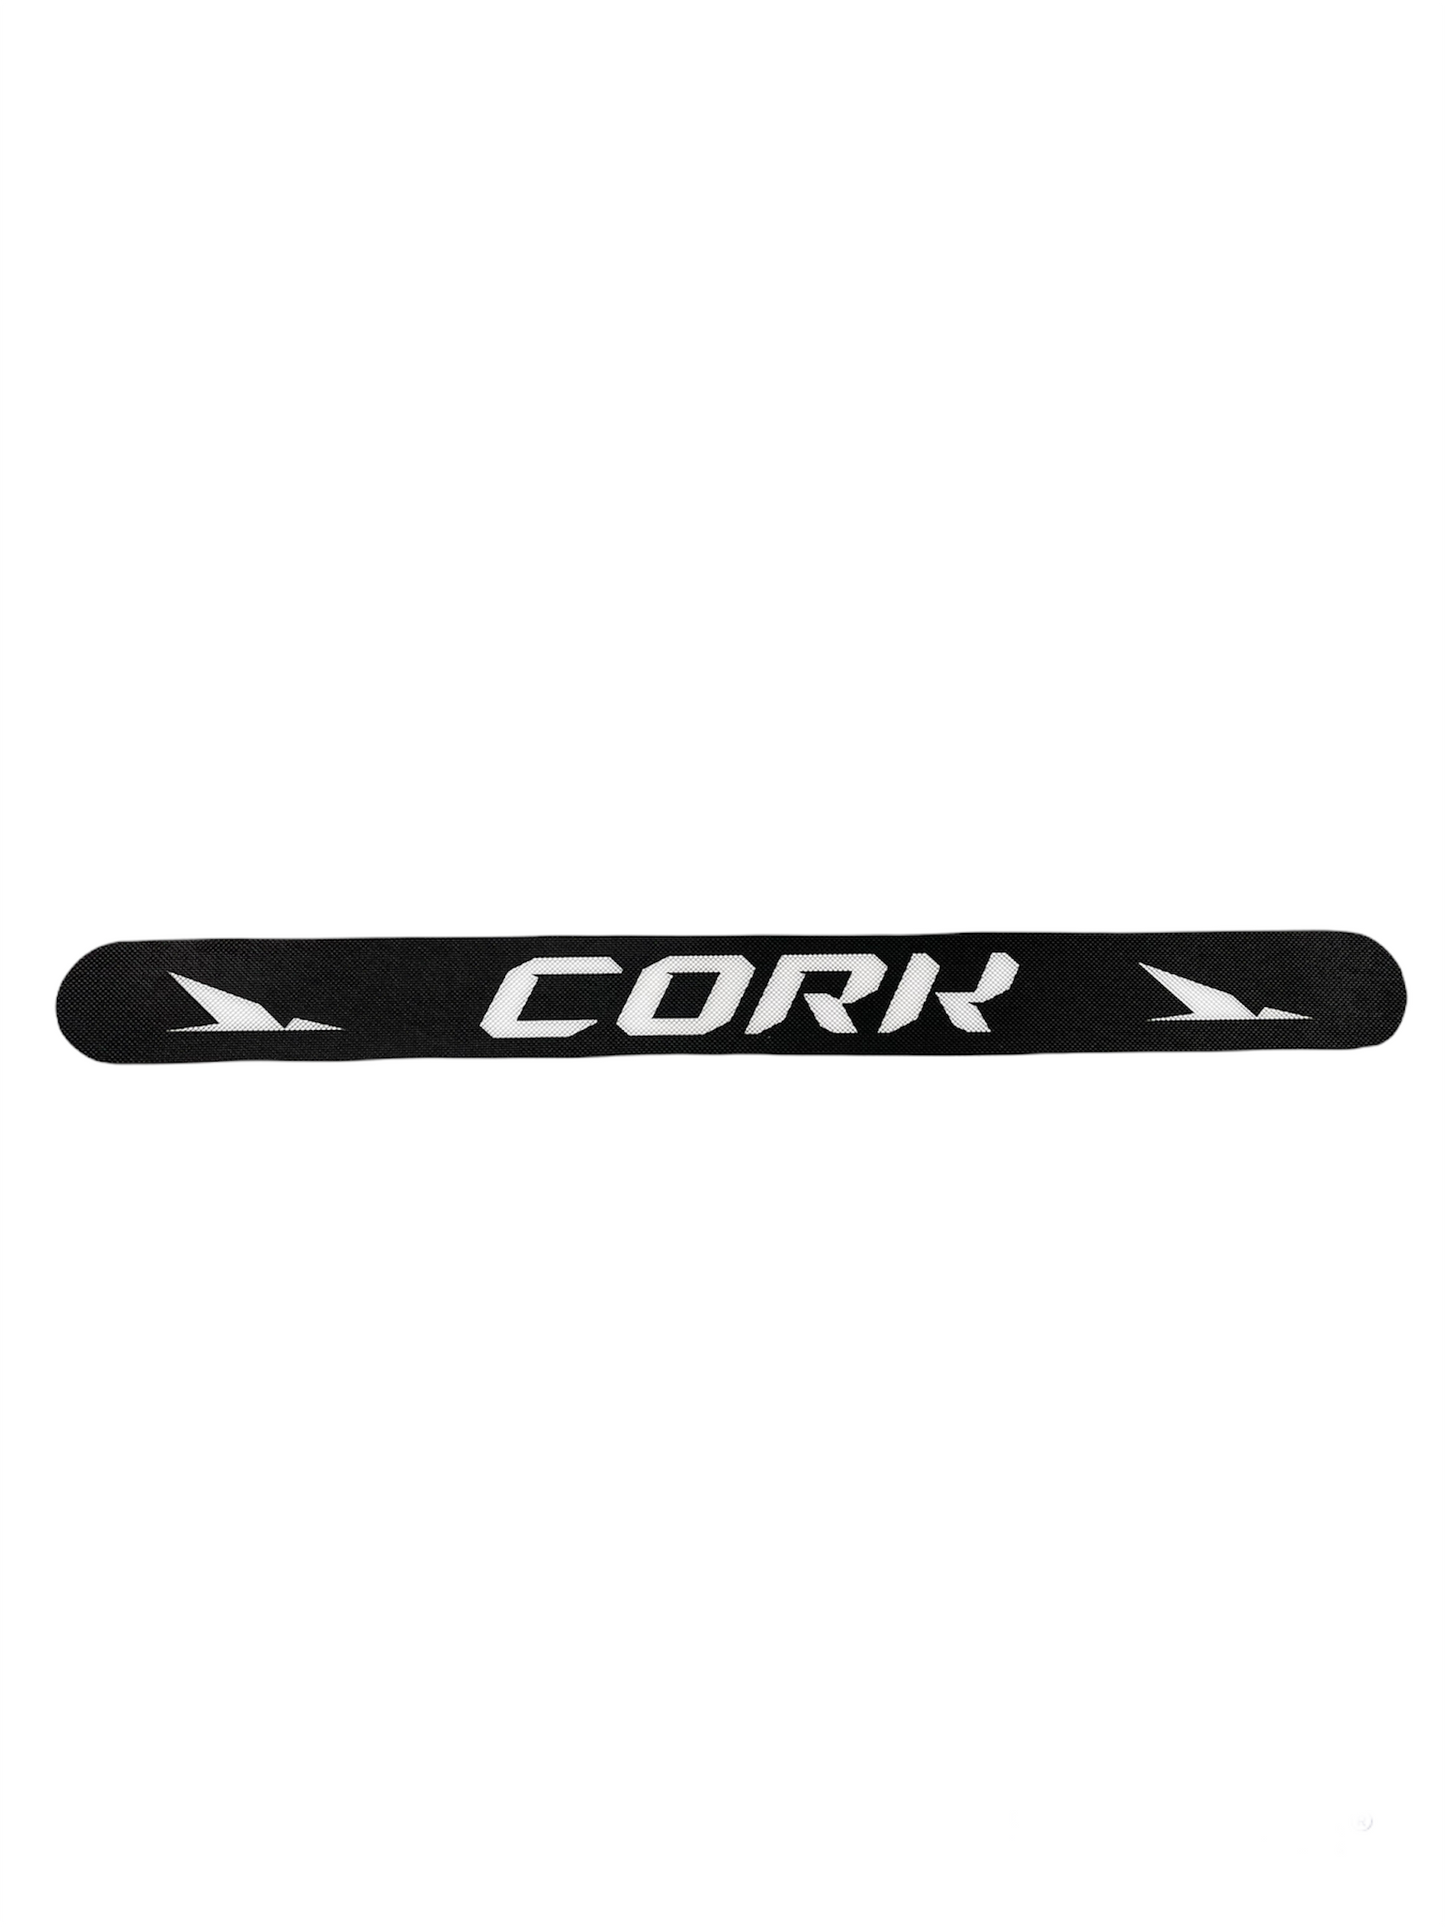 Cork - Protezione racchetta